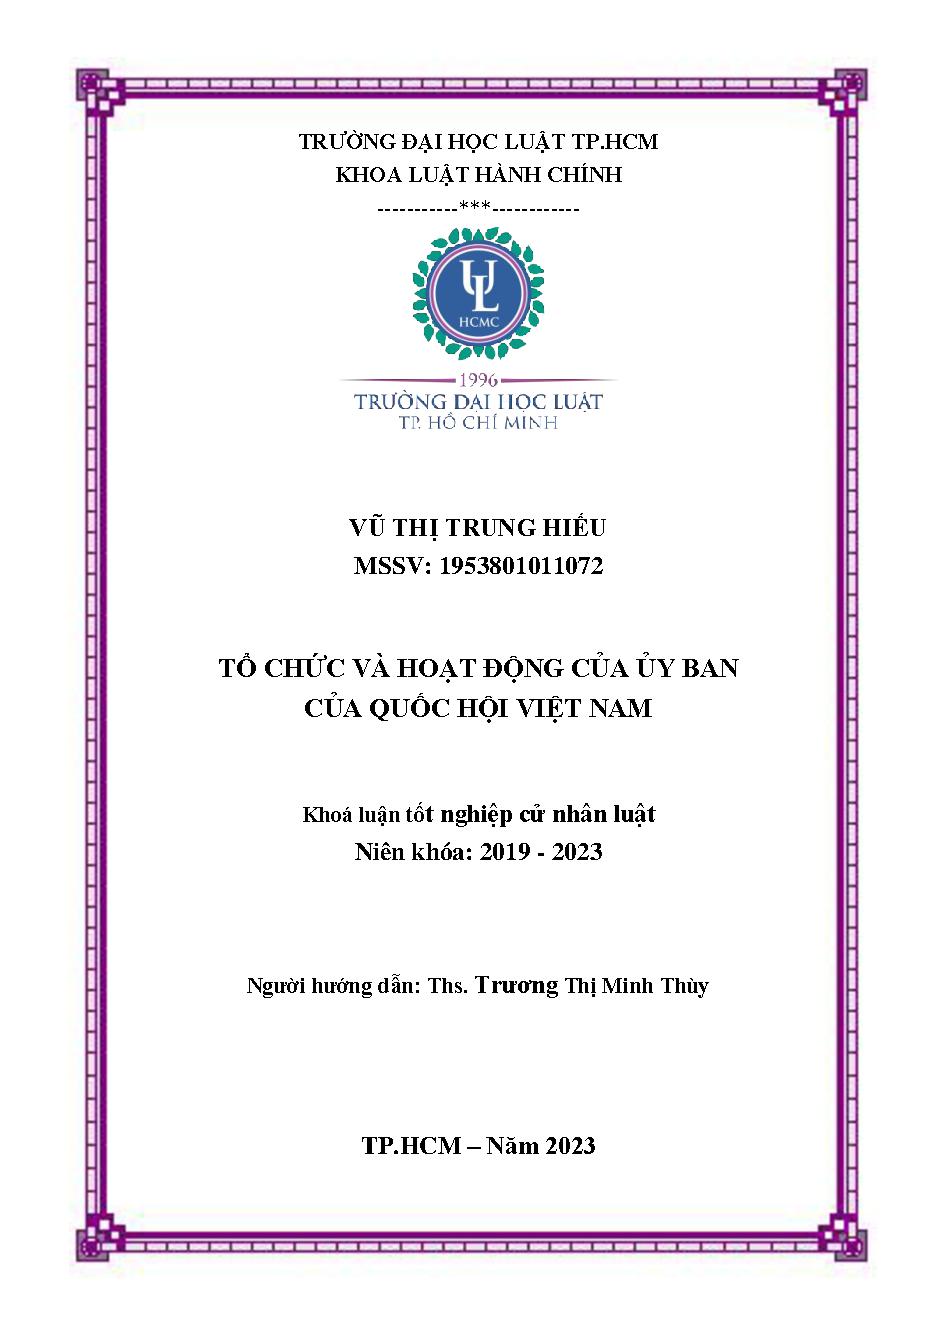 Tổ chức và hoạt động của ủy ban của Quốc hội Việt Nam